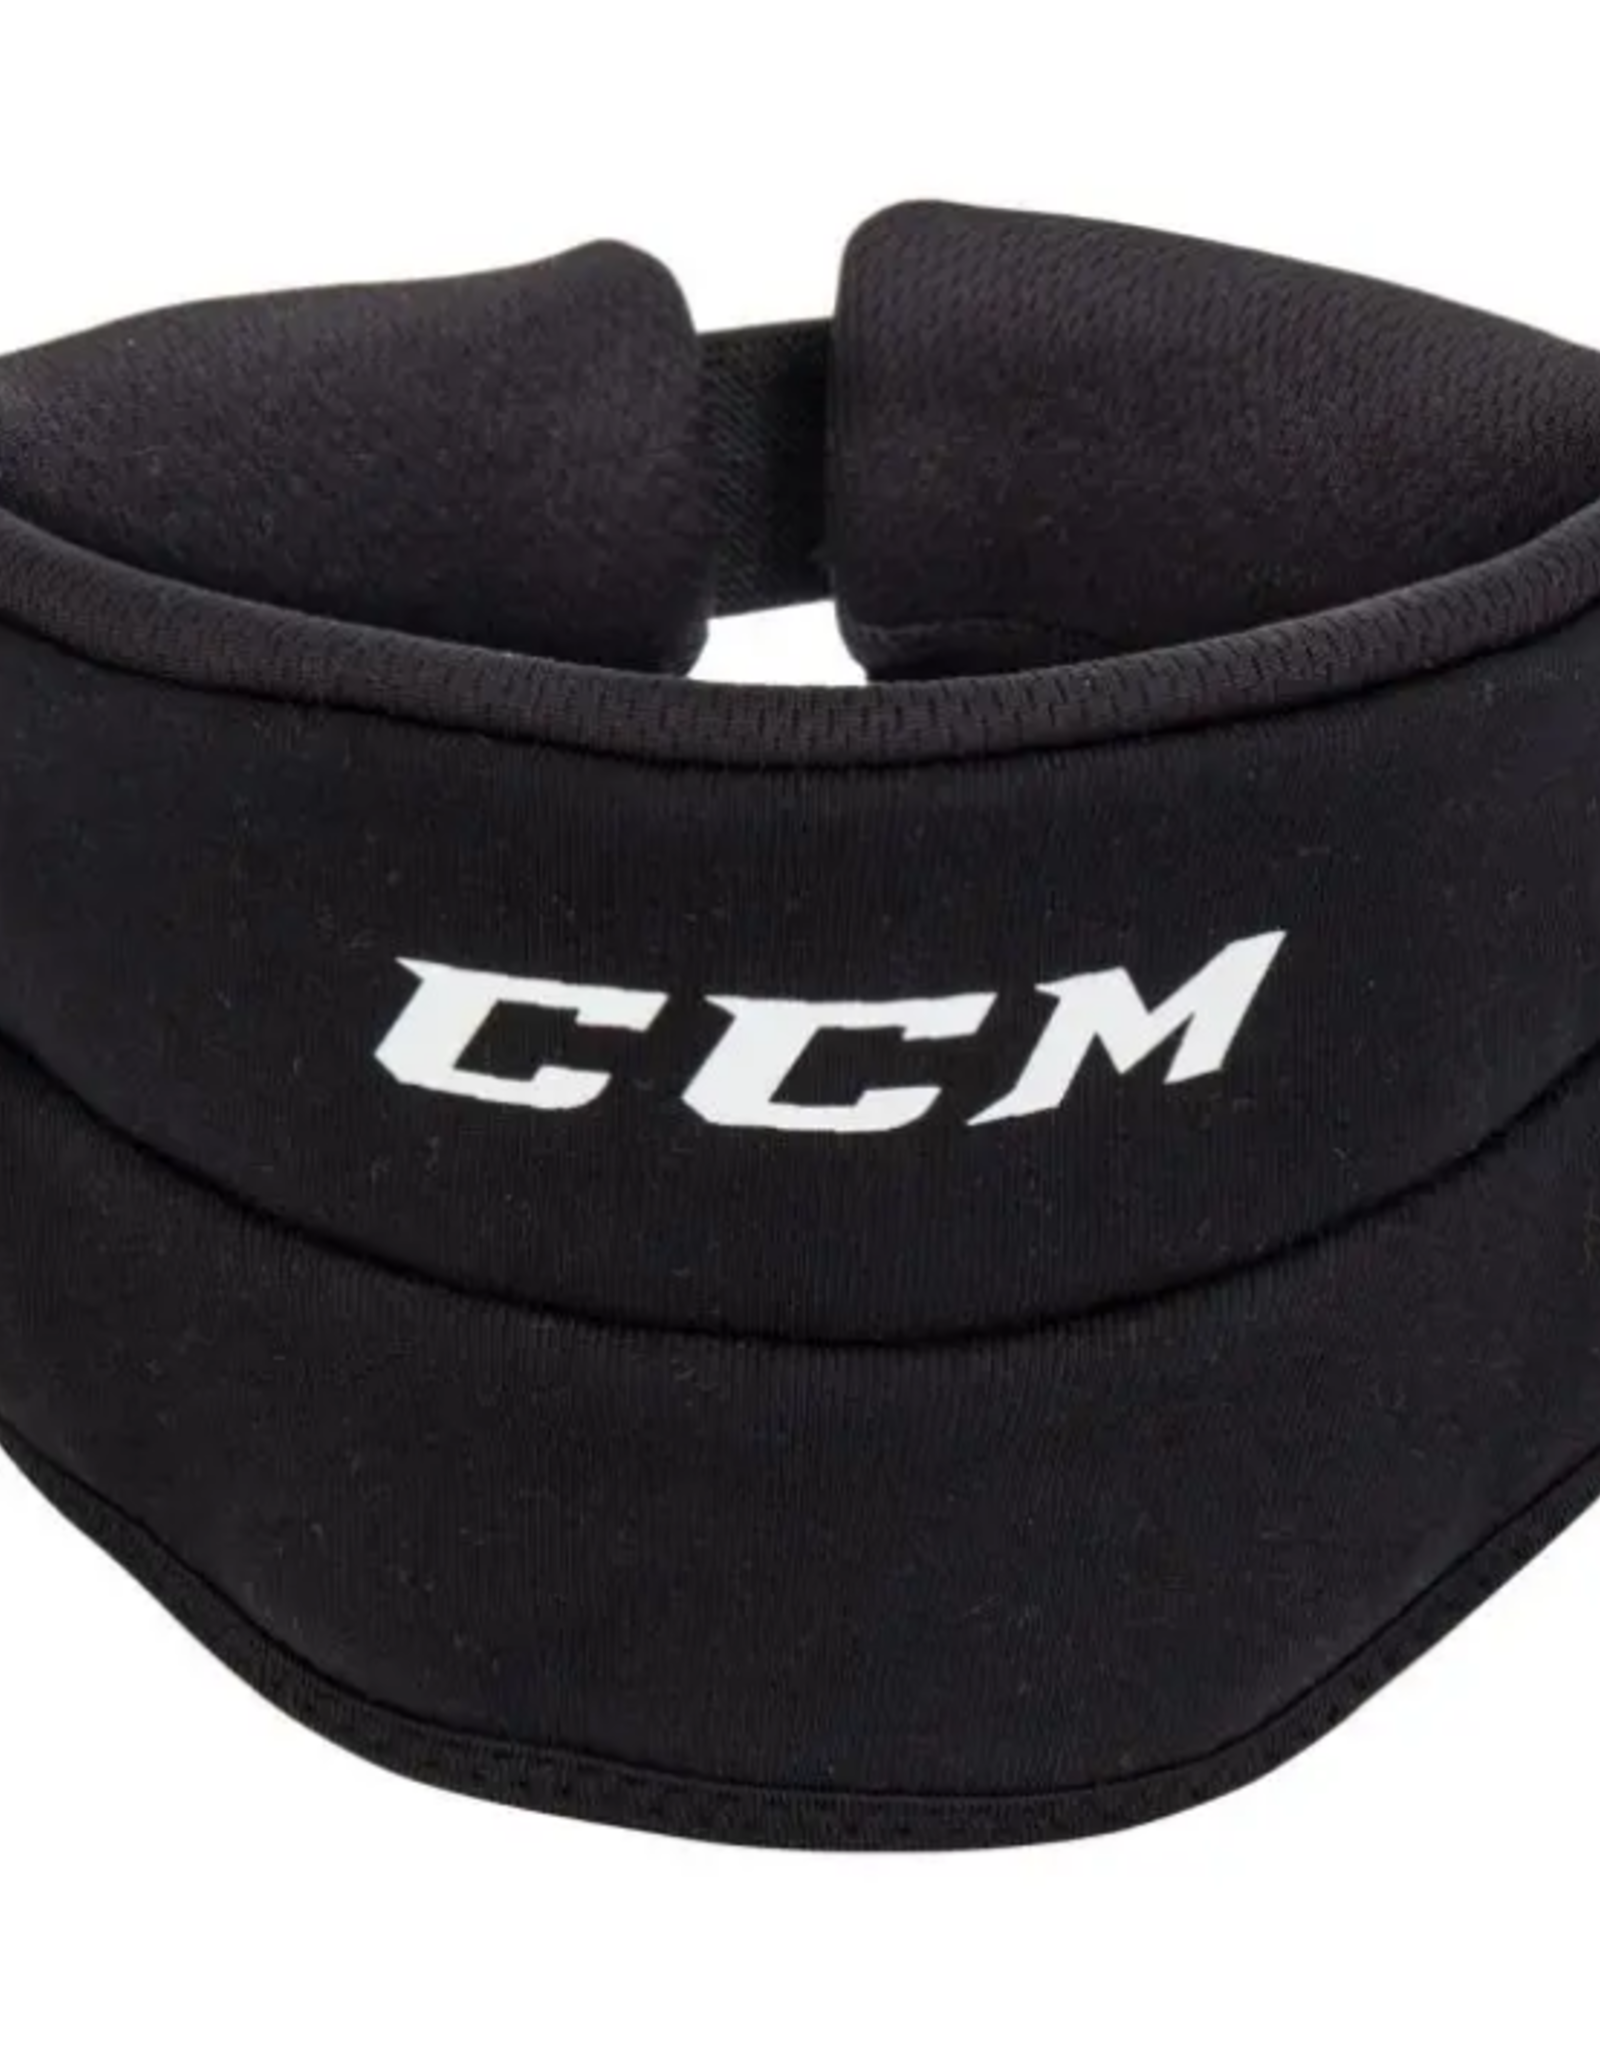 CCM Hockey NECK GUARD JR 900 CUT RESISTANT Black OSFA